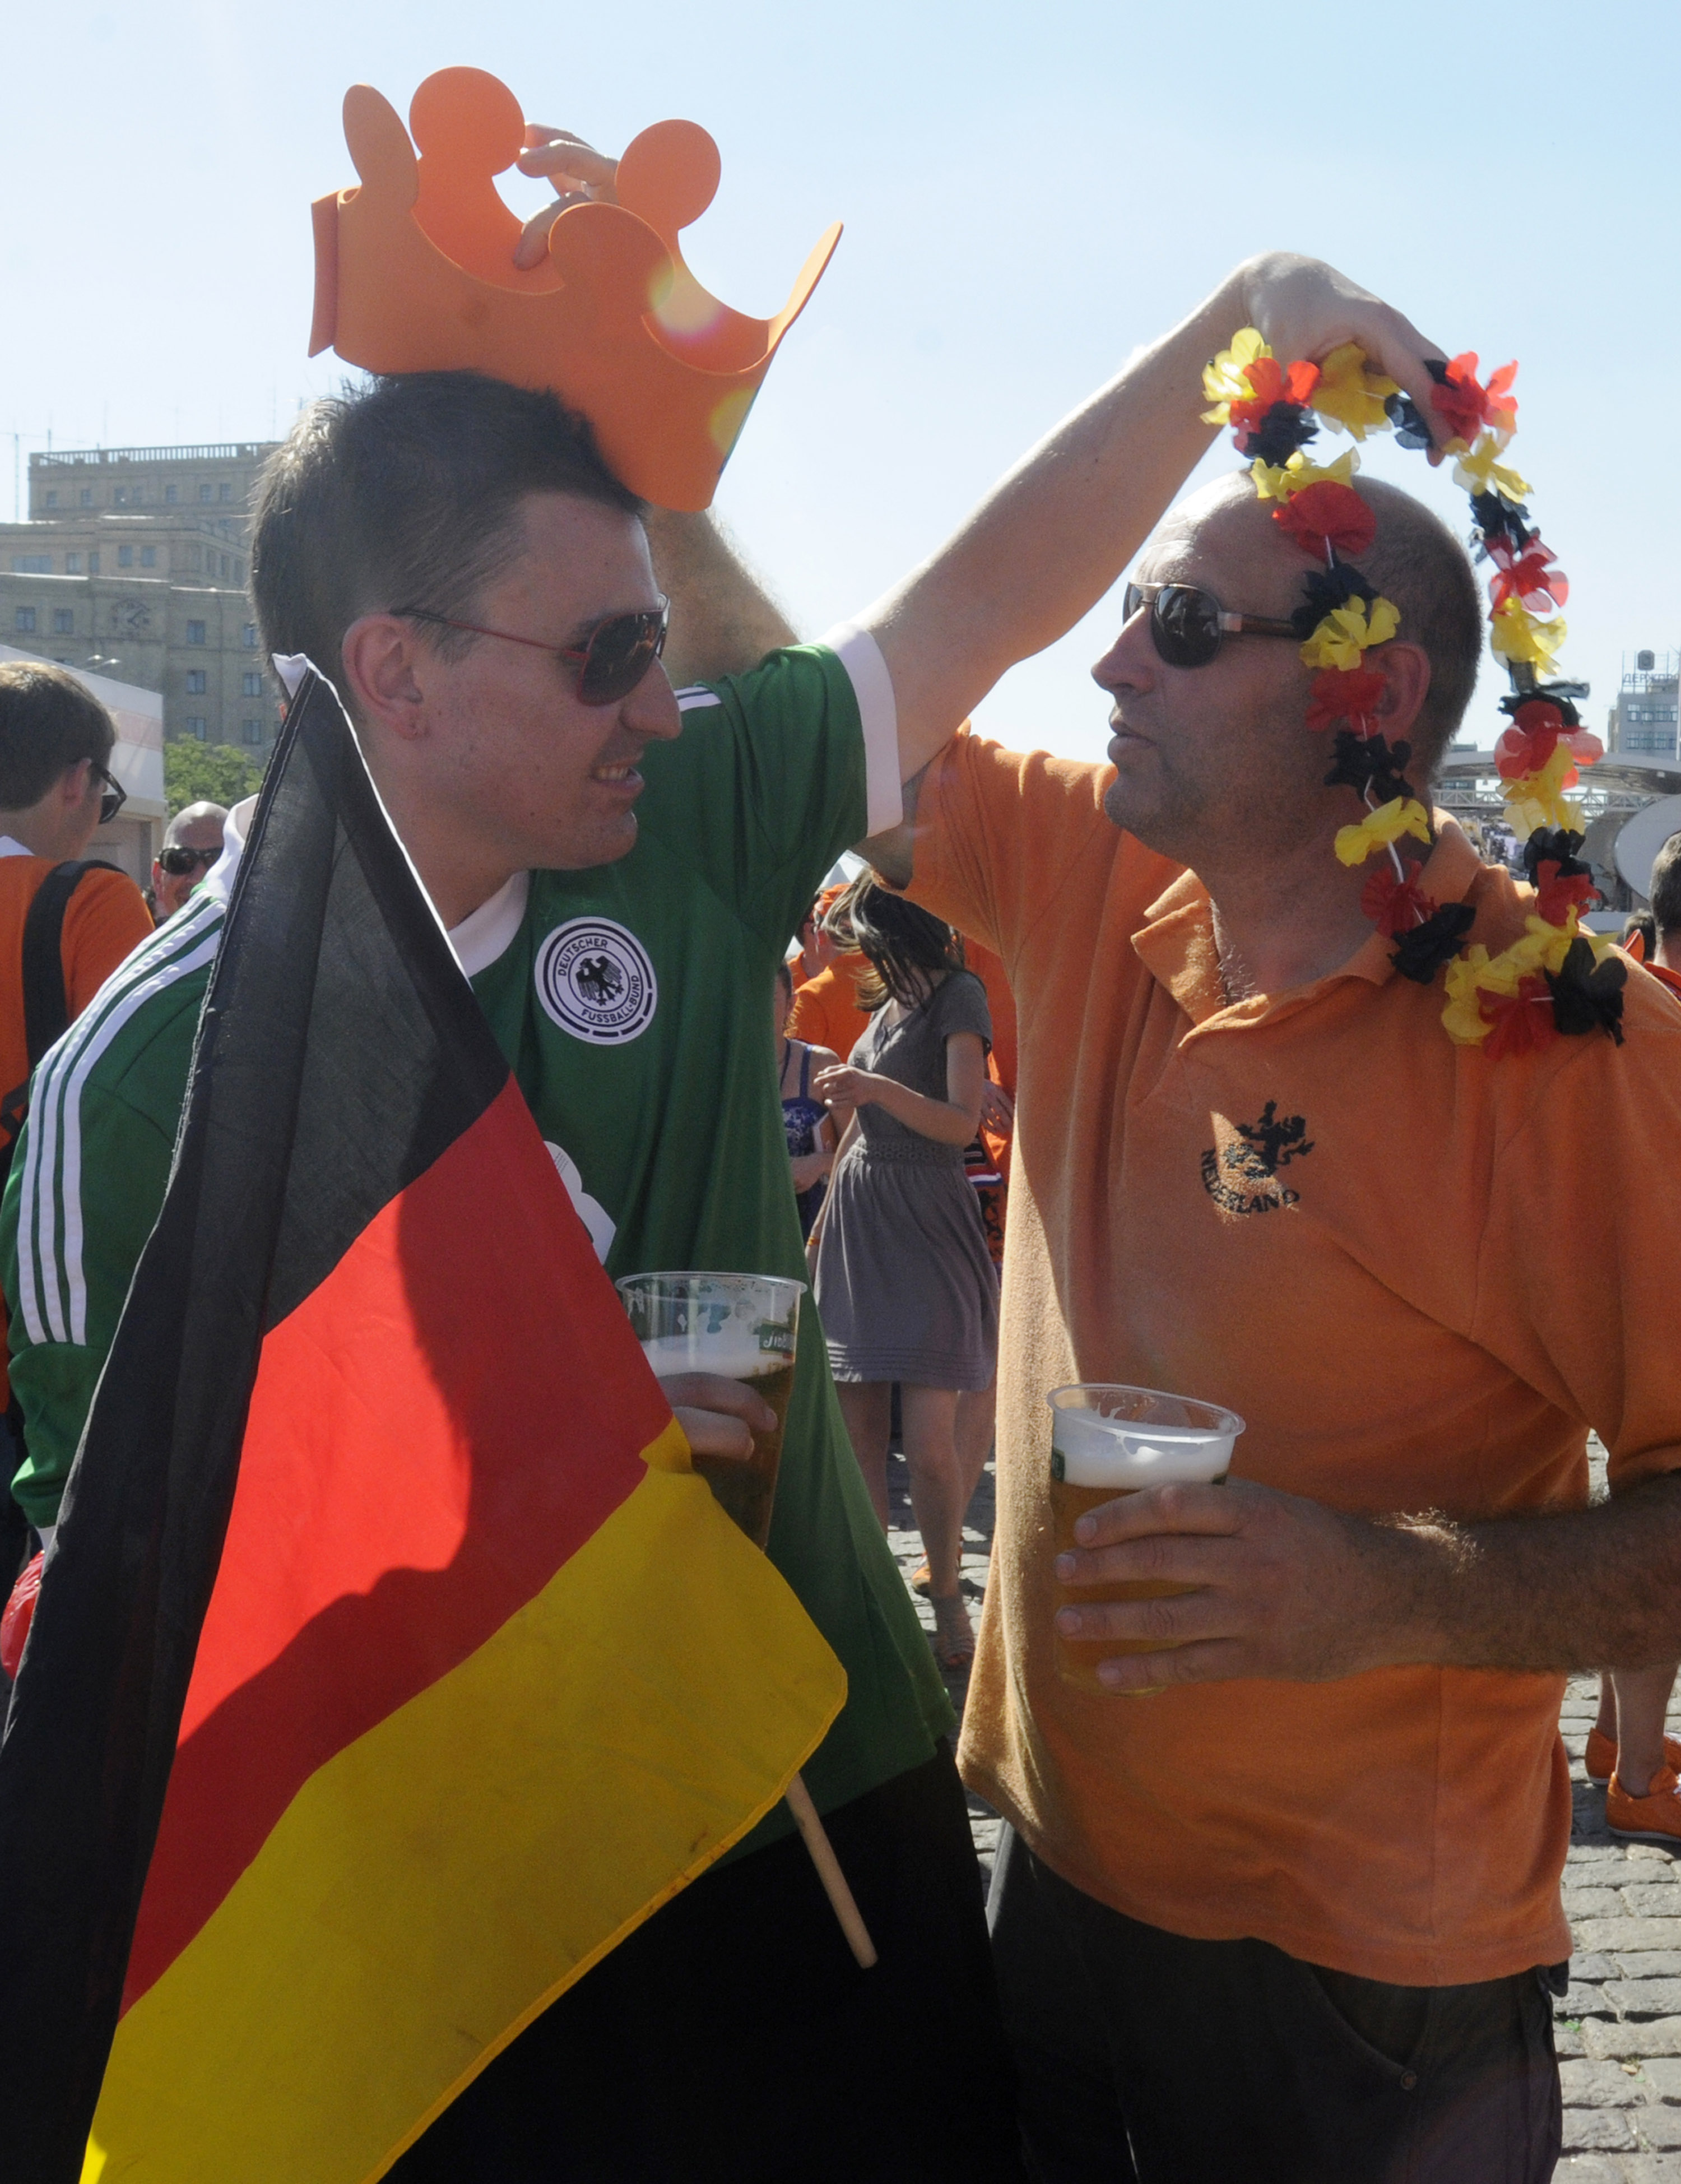 En tysk och en holländsk supporter inför kvällen. Ska båda deras lag klara sig till kvarten?